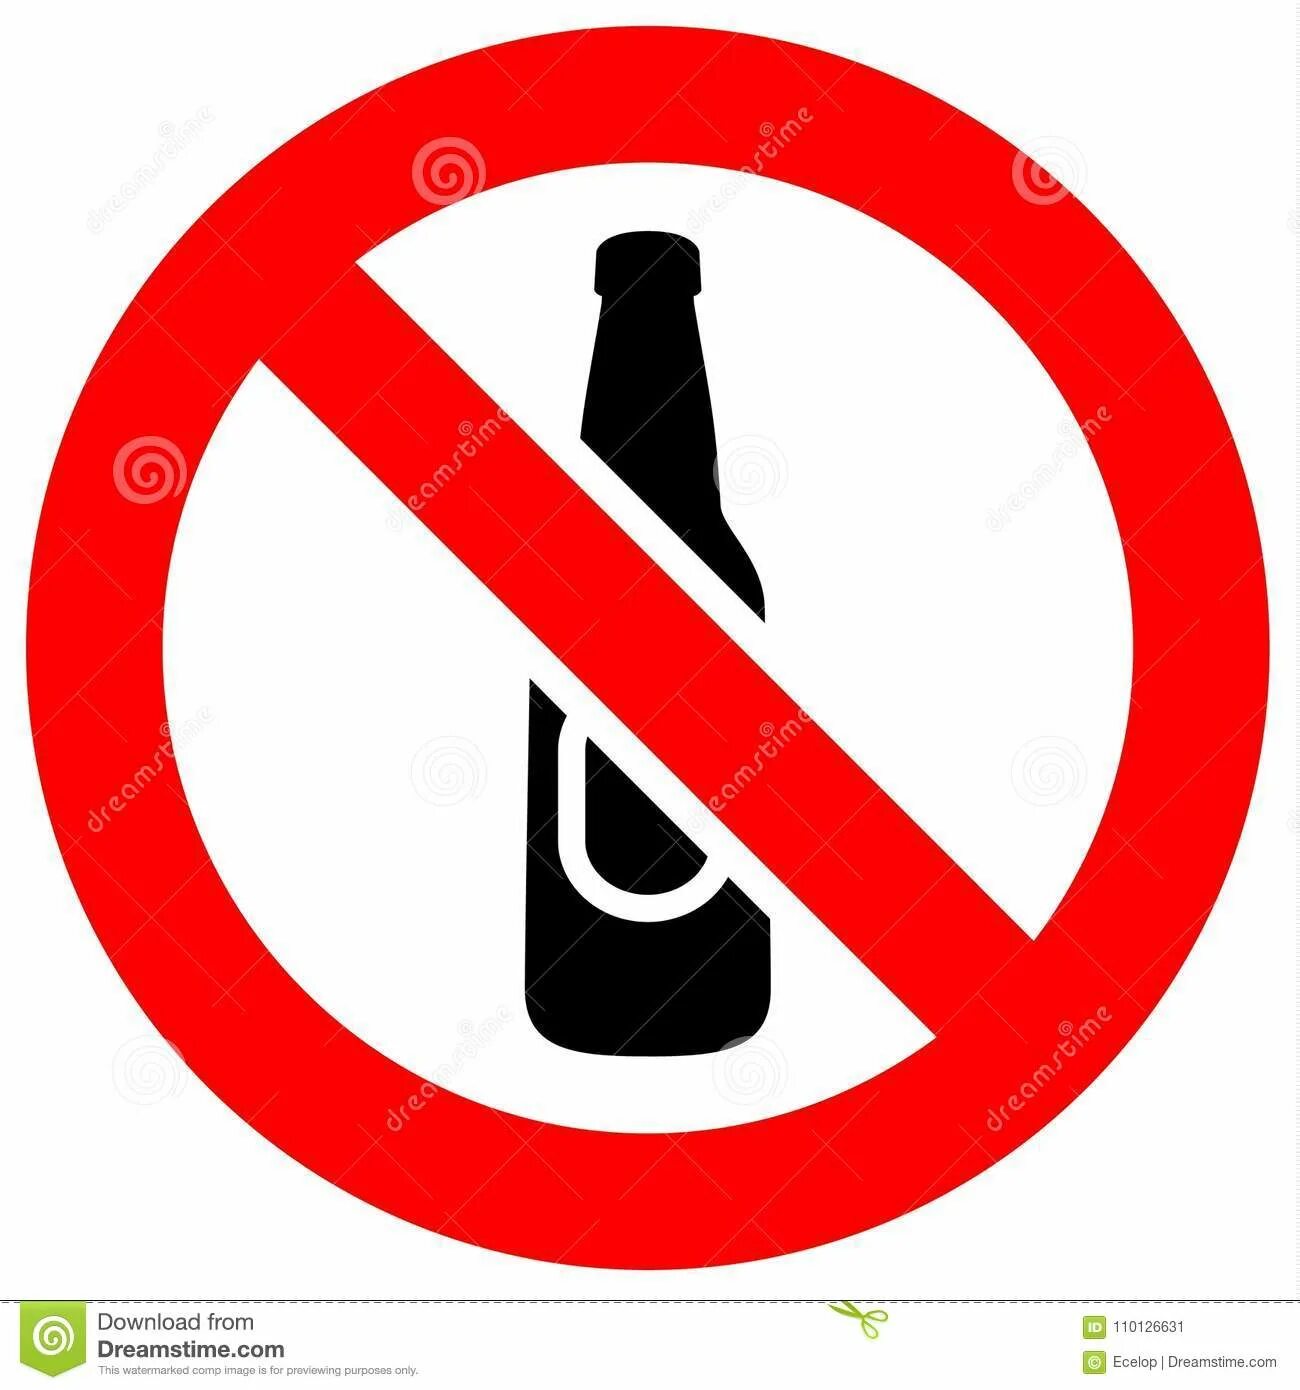 Знак алкоголь запрещен. Стекло запрещено. Значок детям до 3 лет запрещено. Знак качели запрещено. Трое женщин строжайший запрет килограмм